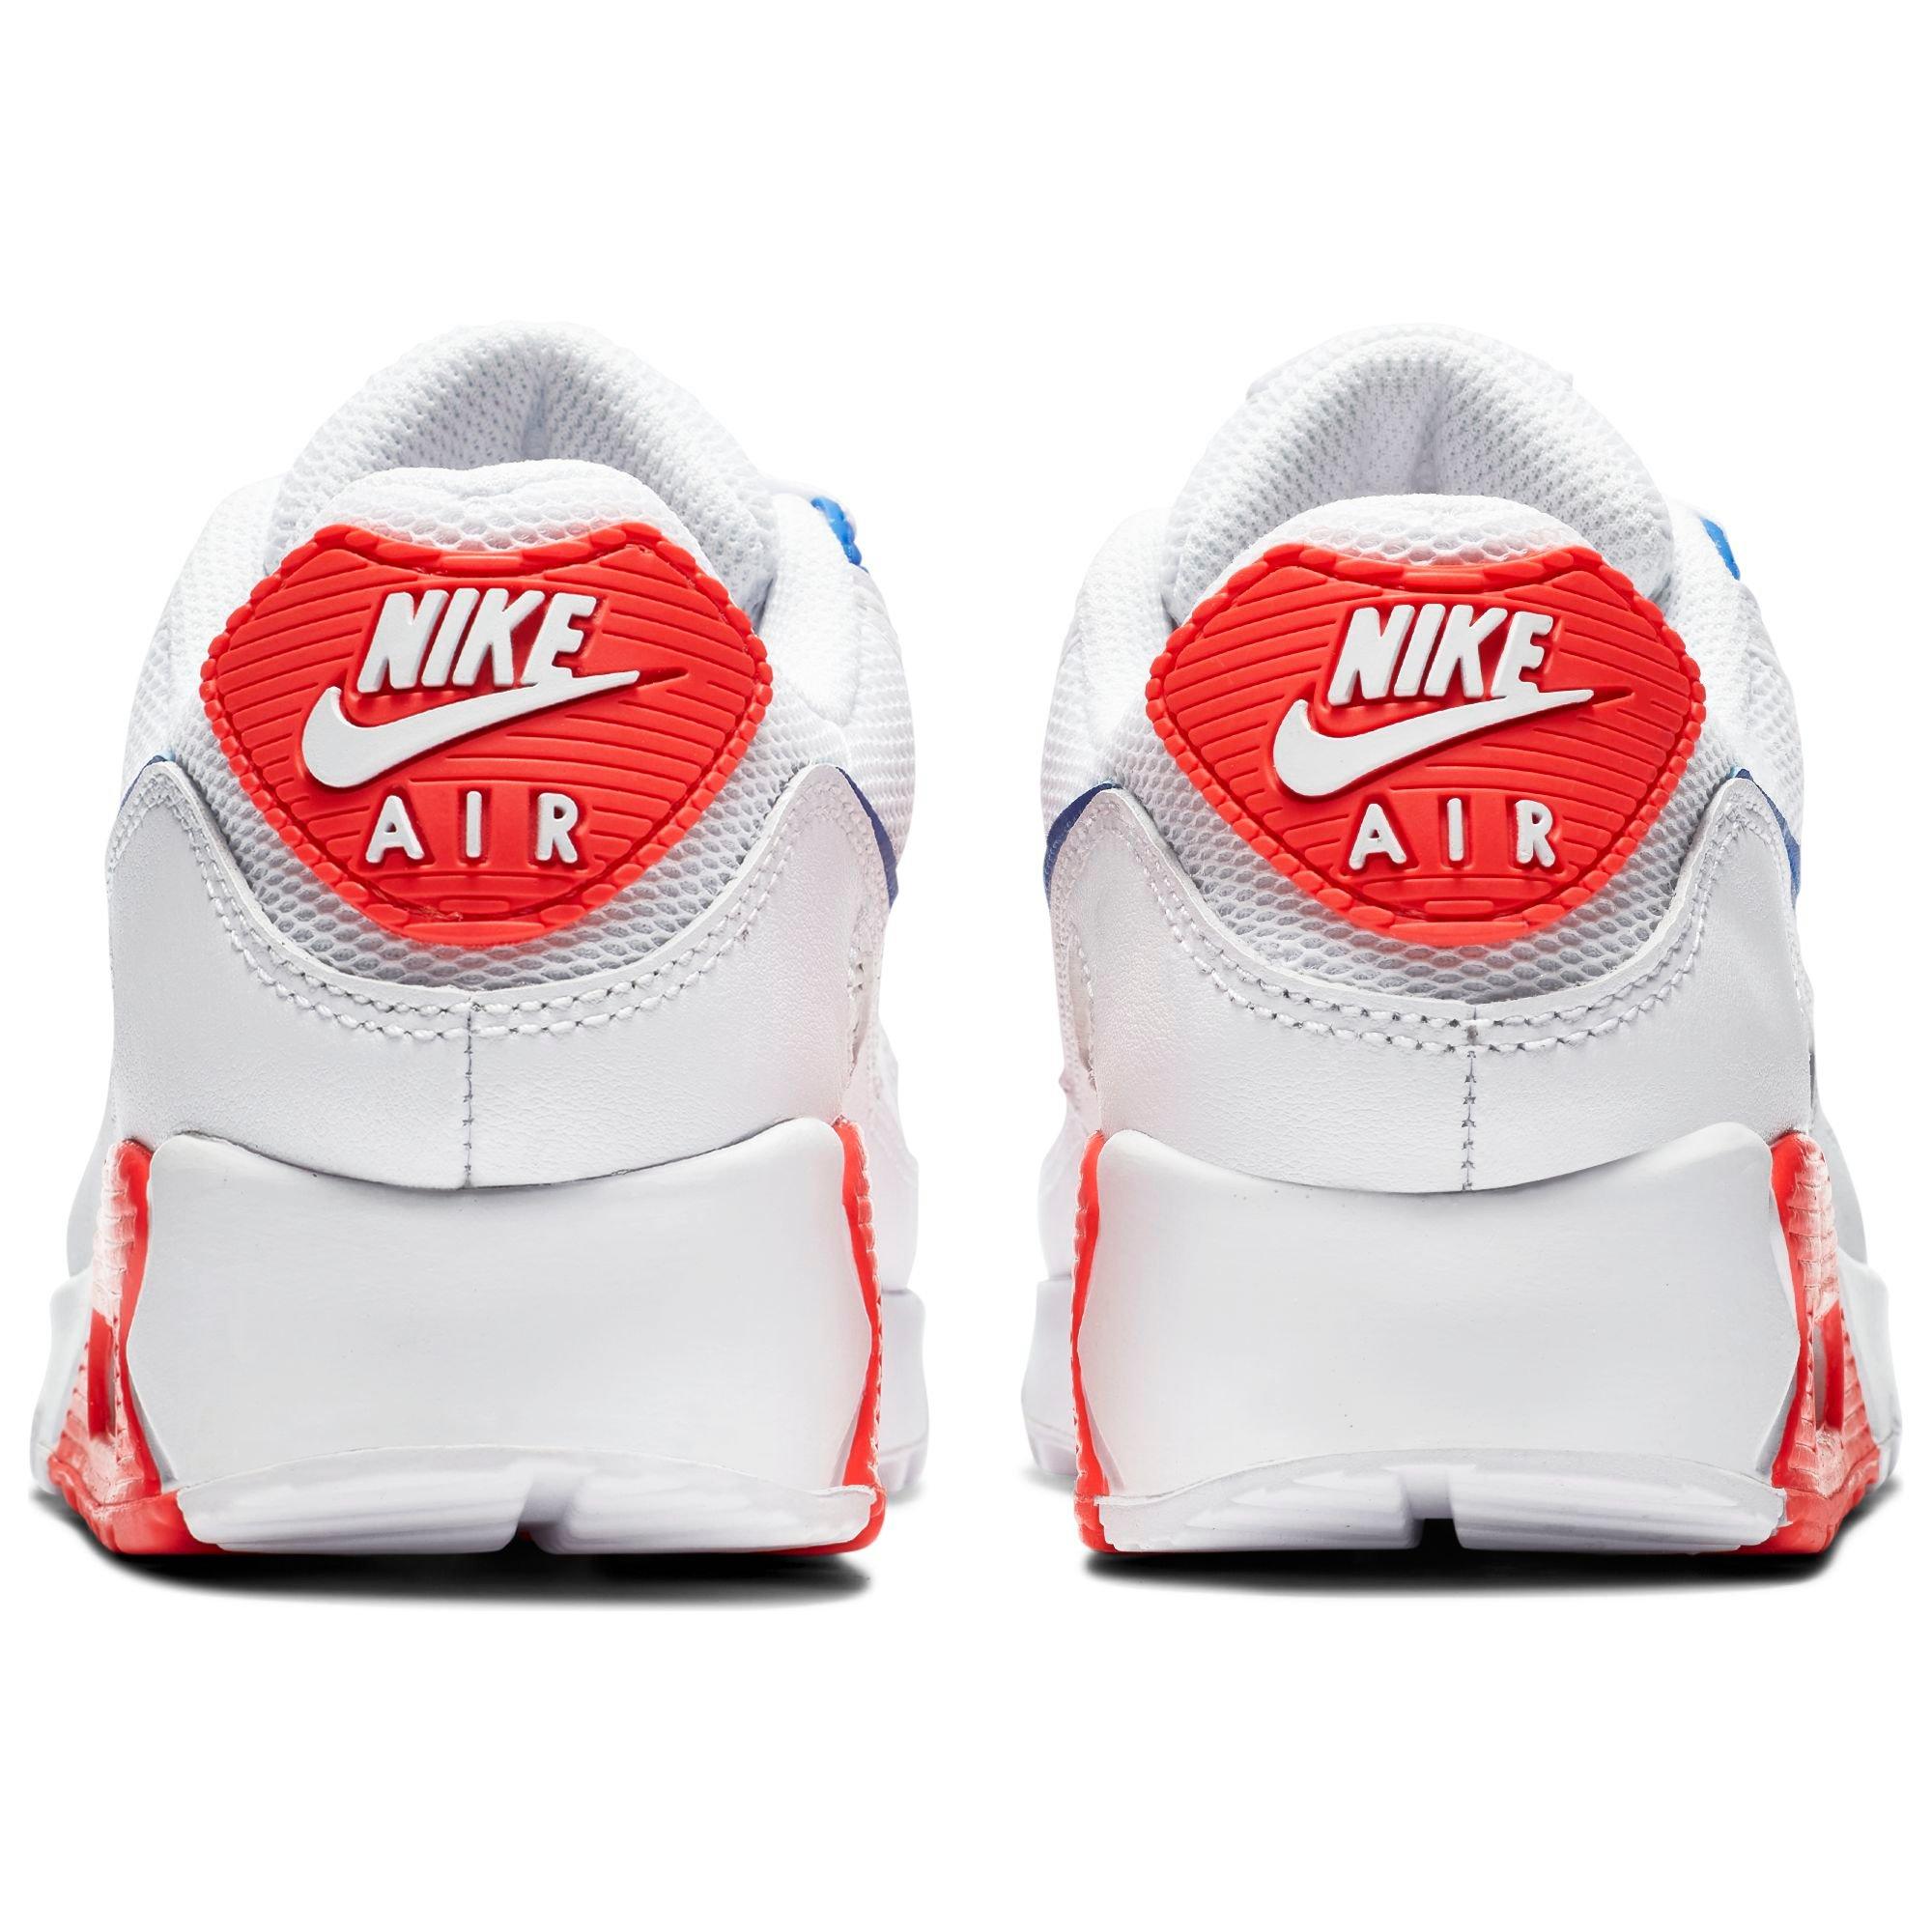 Nike Air Max 90 Red White. Nike Air Max 90 расцветки. Nike Air Max Classic. Nike Air Max 99. Найк аир модели